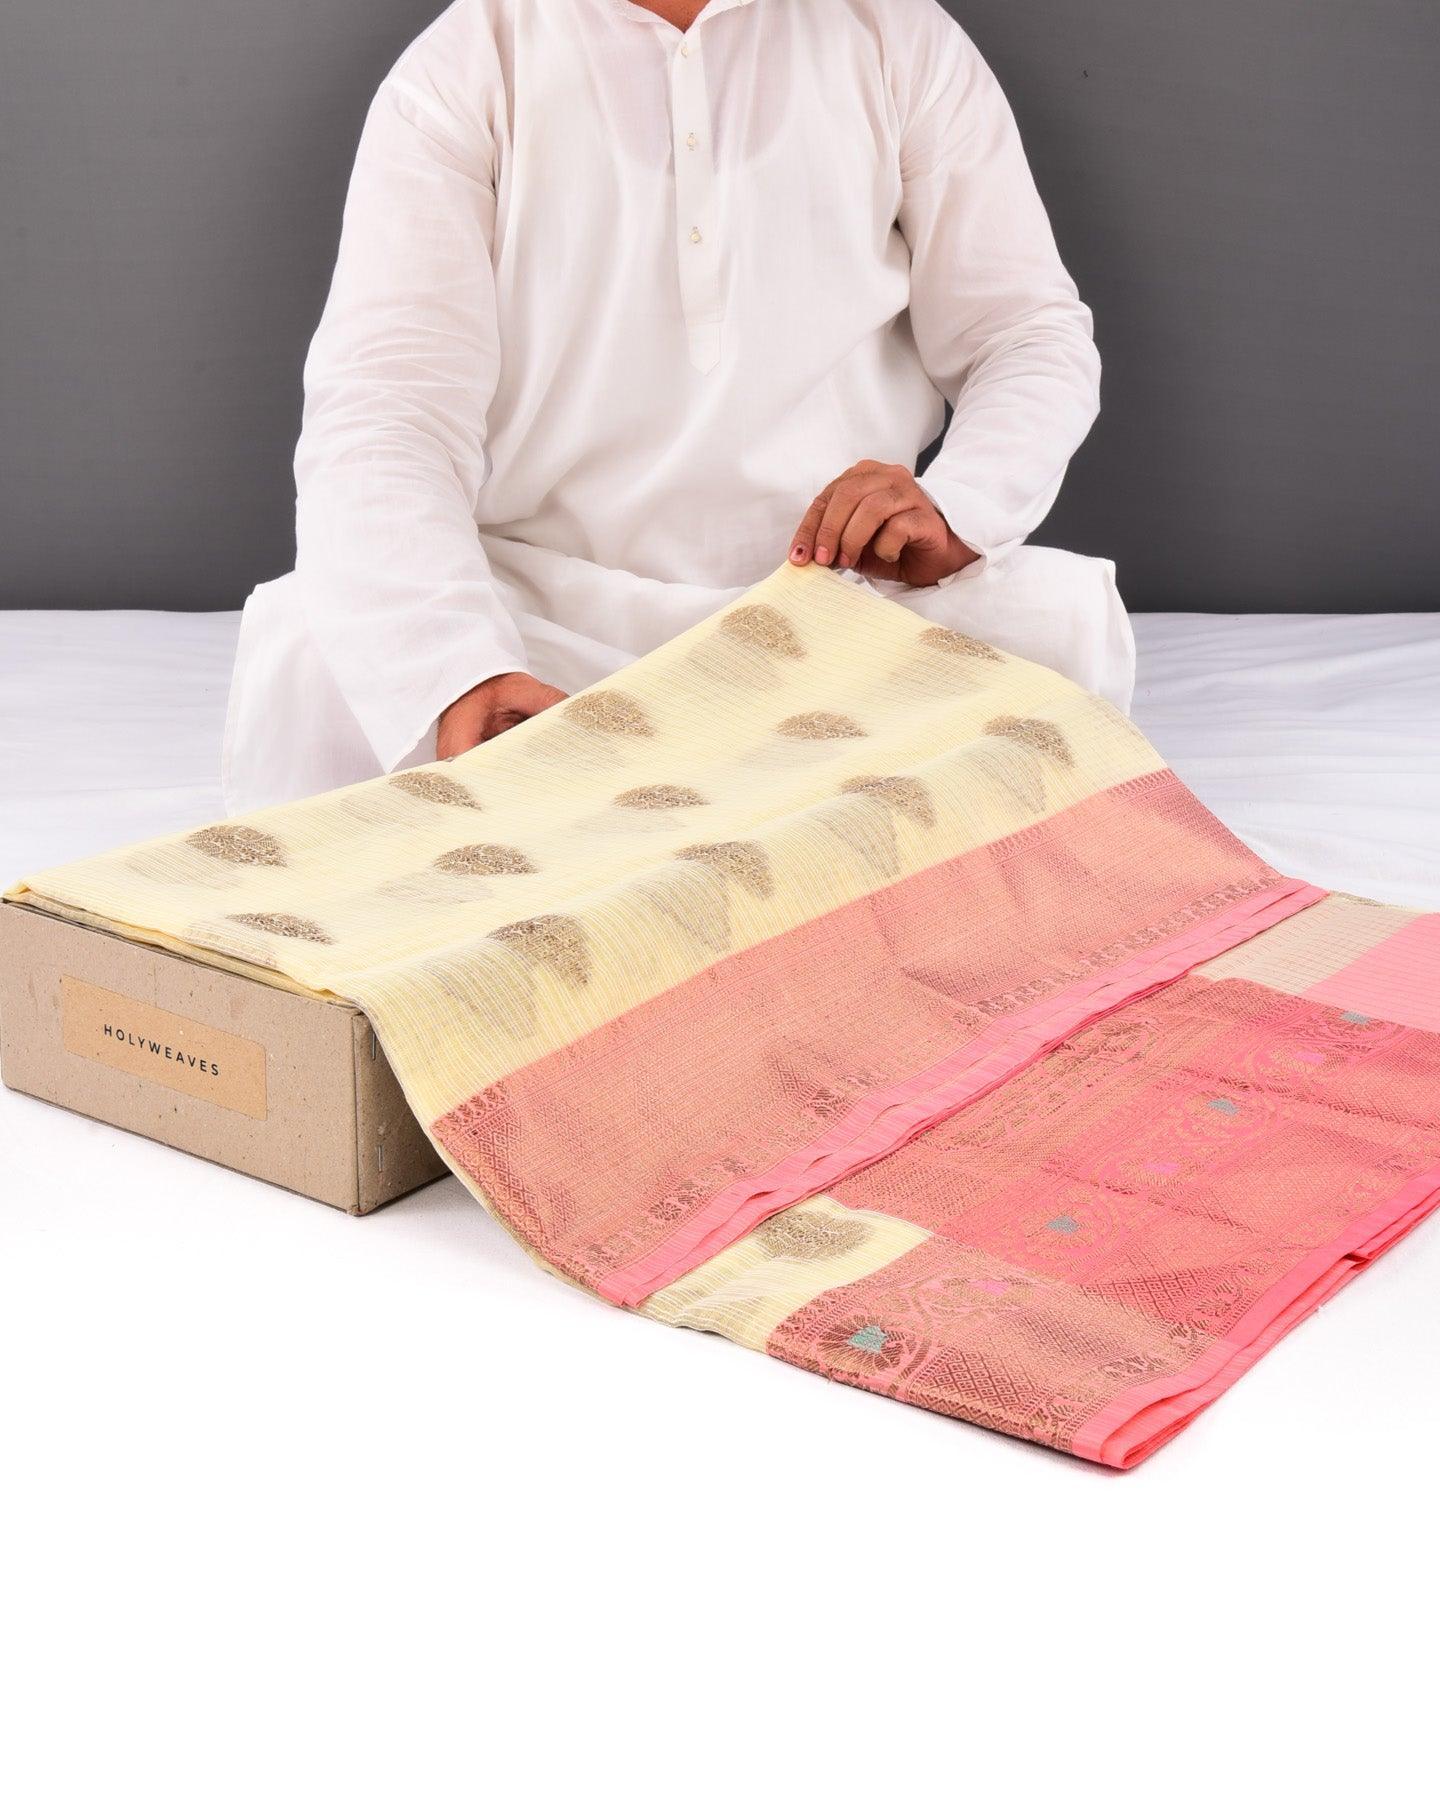 Cream Banarasi Check Texture Antique Buta Cutwork Brocade Woven Cotton Silk Saree with Peach Border Pallu - By HolyWeaves, Benares